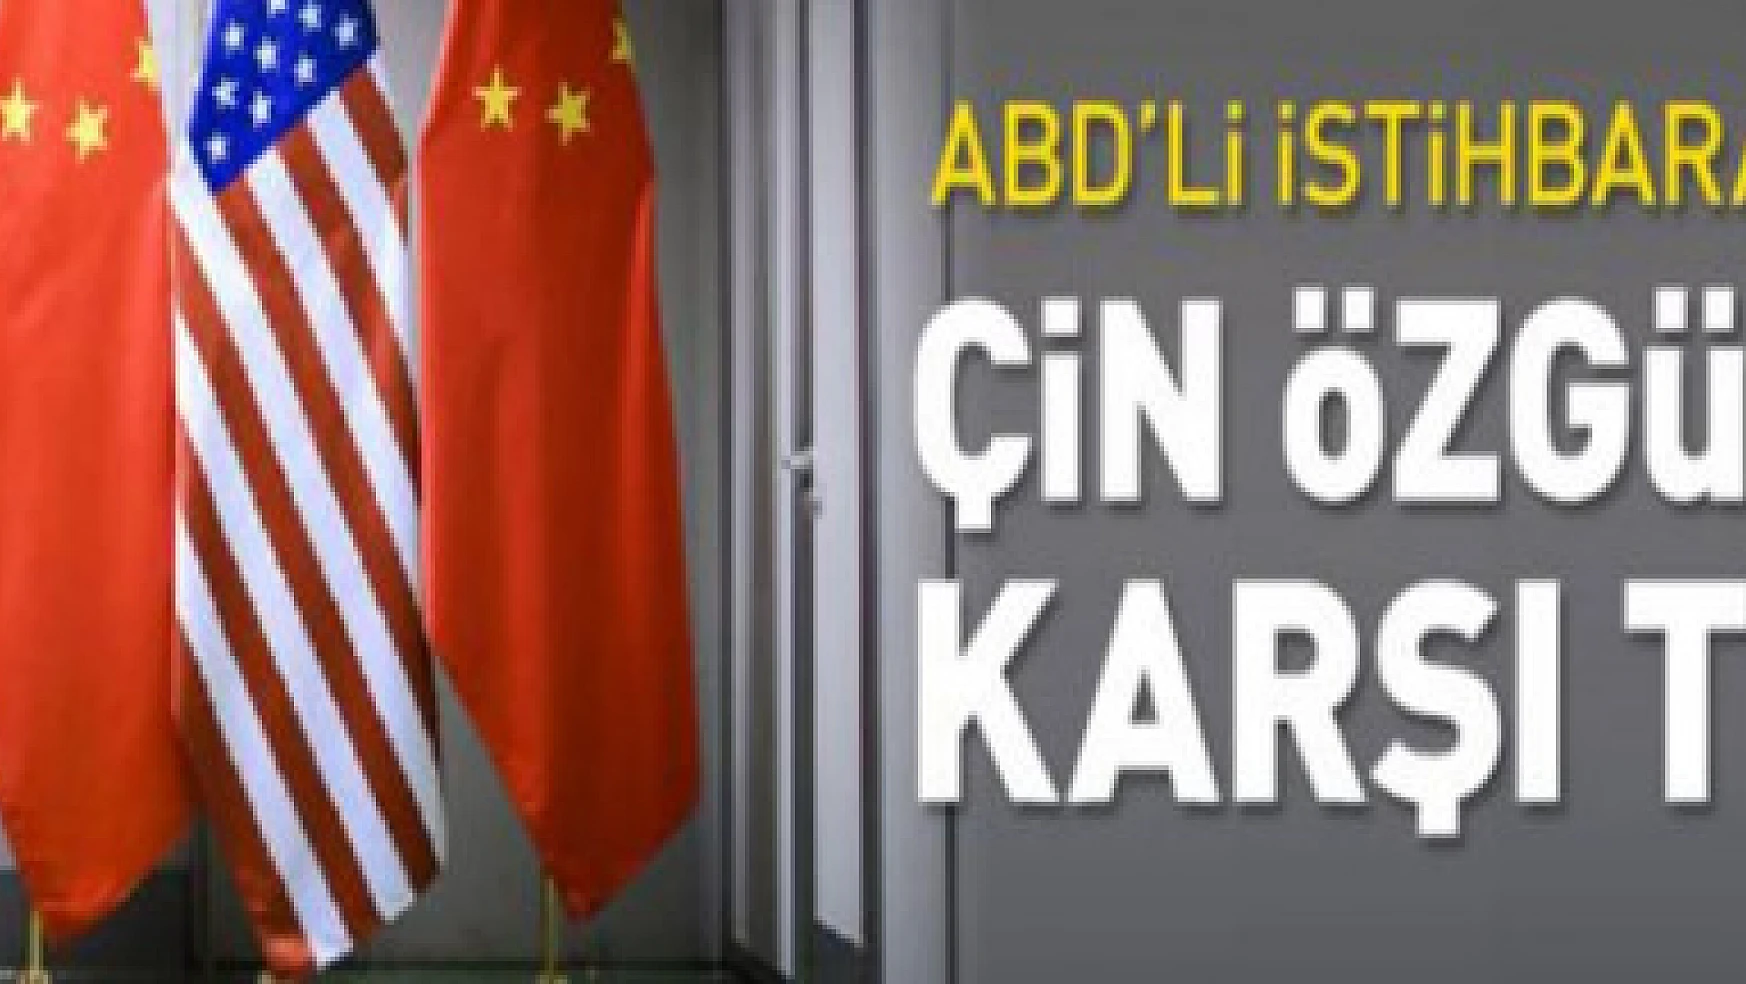 ABD'li istihbarat yetkilisi: Çin özgürlüğe karşı en büyük tehdit